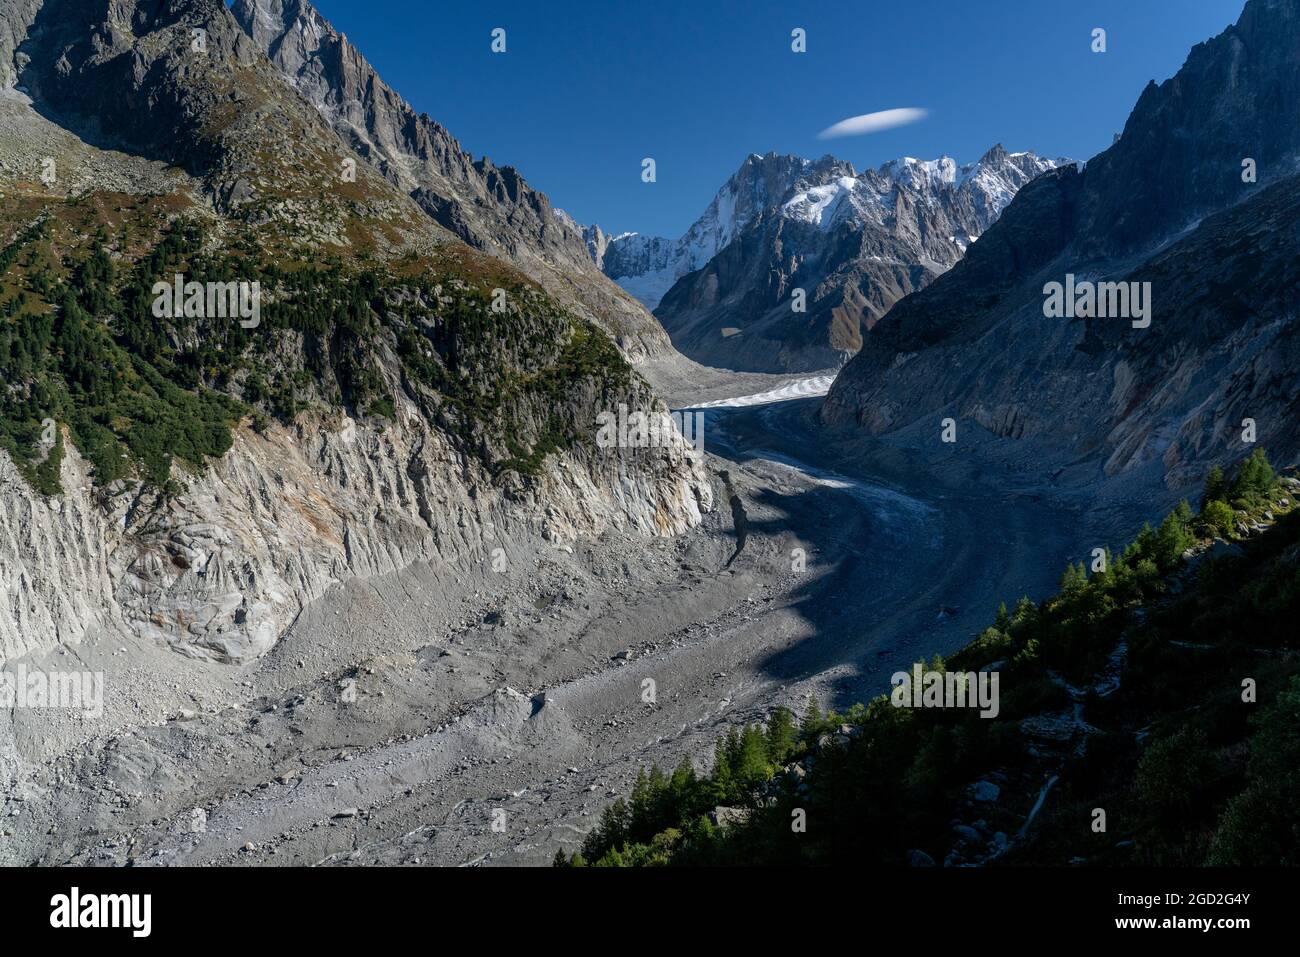 Geographie / Reisen, Frankreich, m de Ice-Cream, Hintergrund Grande Jorasses, Mont Blanc Gebiet, ADDITIONAL-RIGHTS-CLEARANCE-INFO-NOT-AVAILABLE Stockfoto